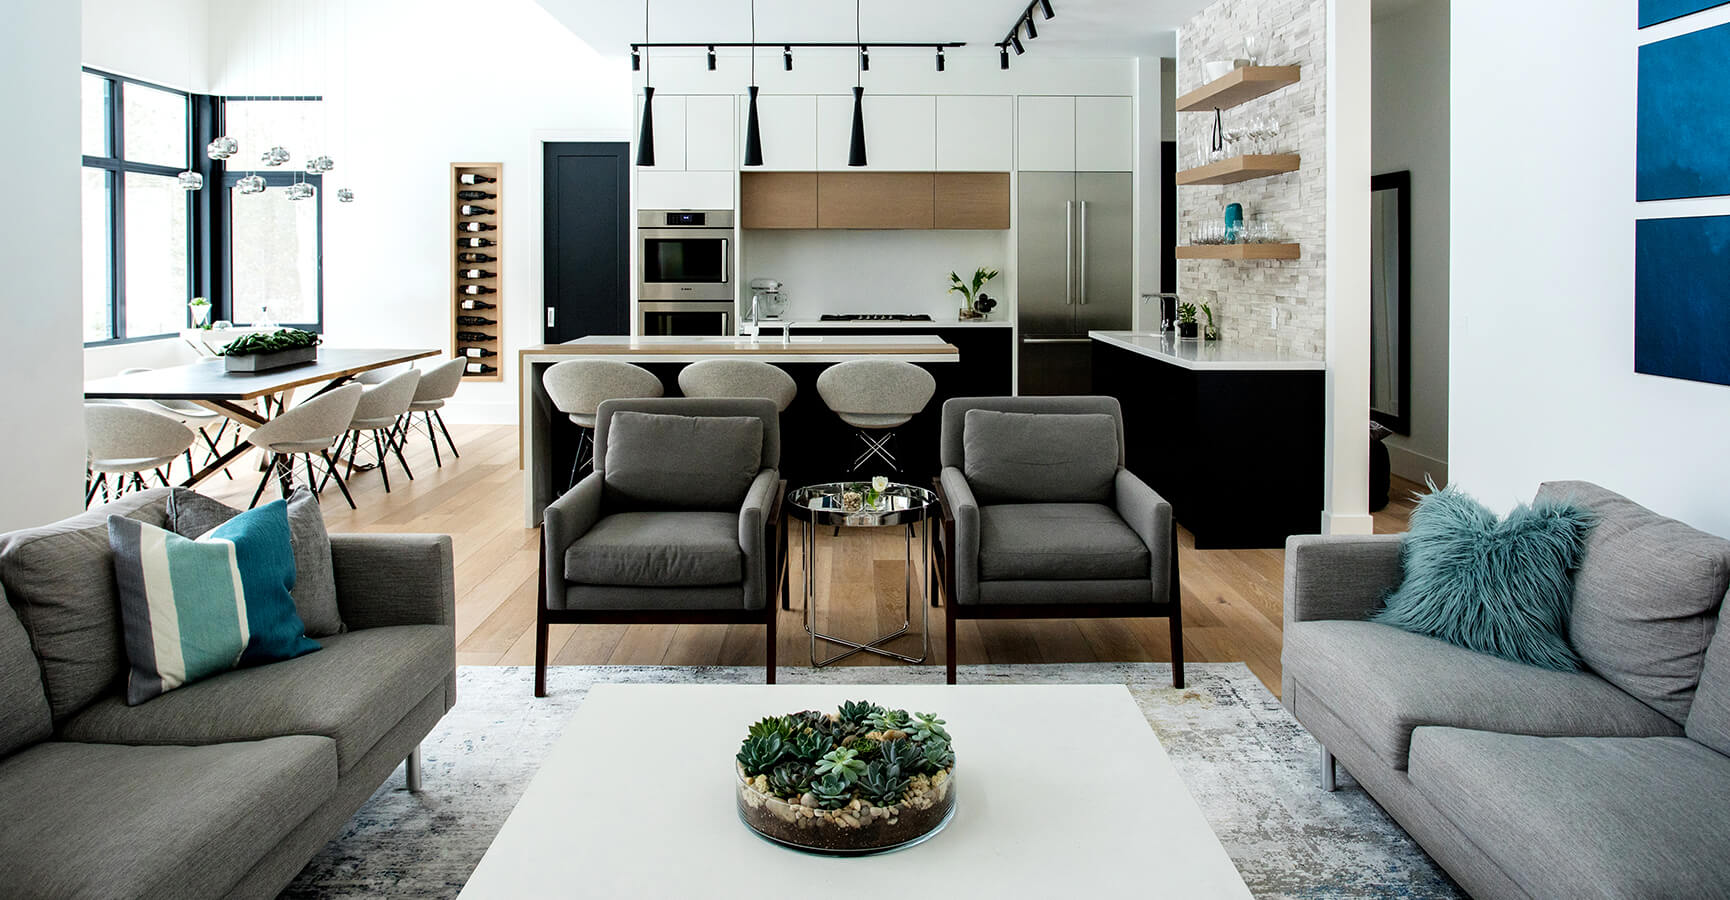 Living Room Furniture & Kitchen Design